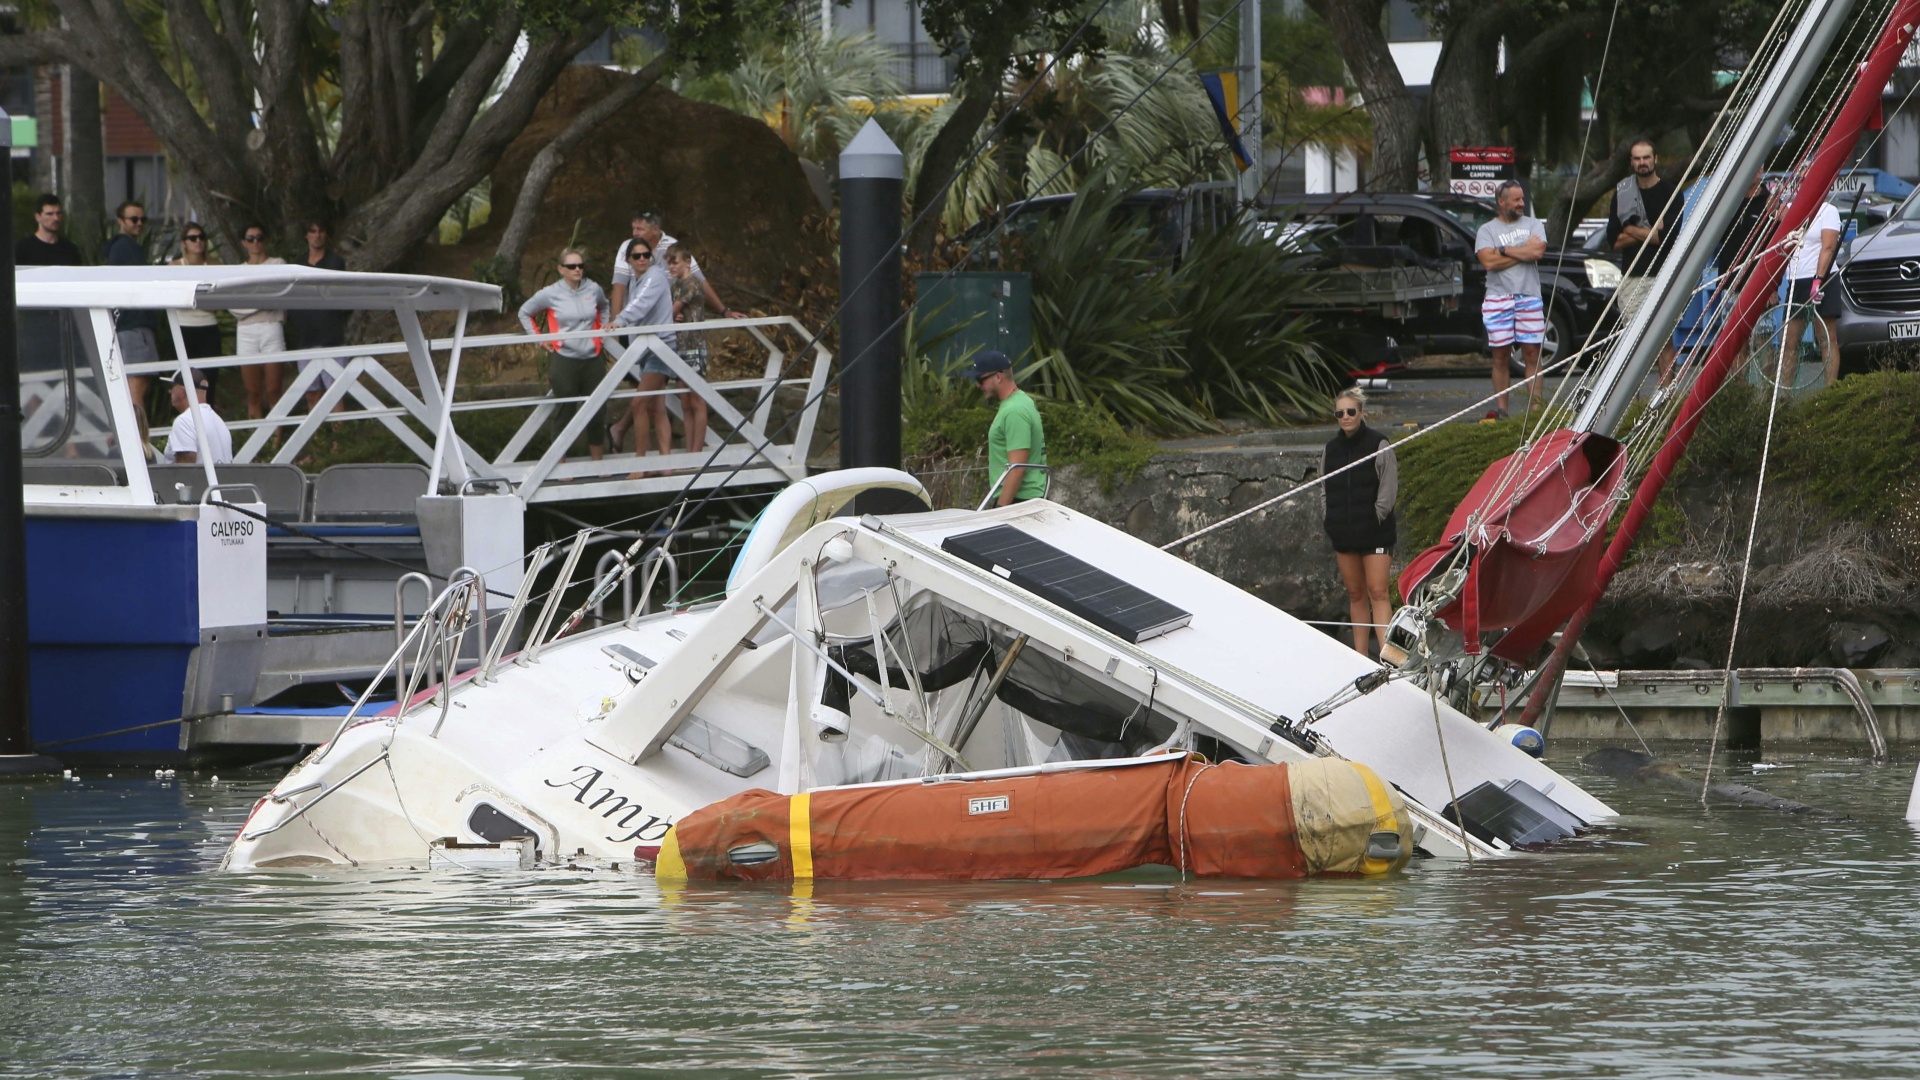 Neuseeland, Tutukaka: Menschen stehen am Hafenbecken und blicken auf ein Boot, das aufgrund starker Flutwellen im Hafen zu sinken droht. | dpa